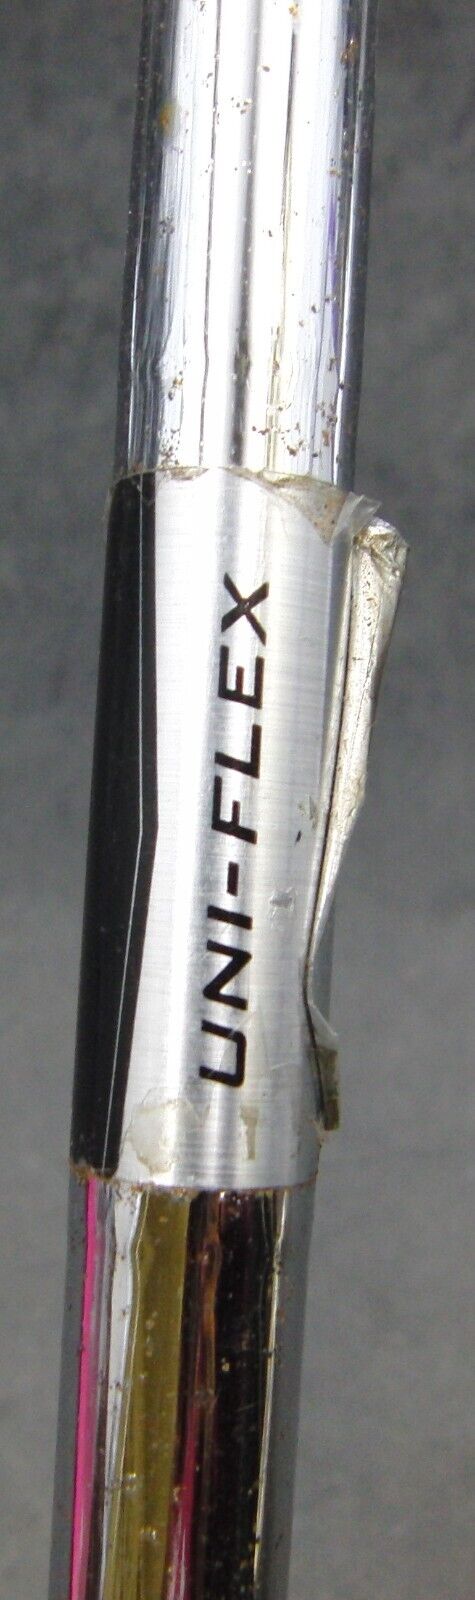 Nike Ignite Pitching Wedge Uniflex Steel Shaft Nike Grip